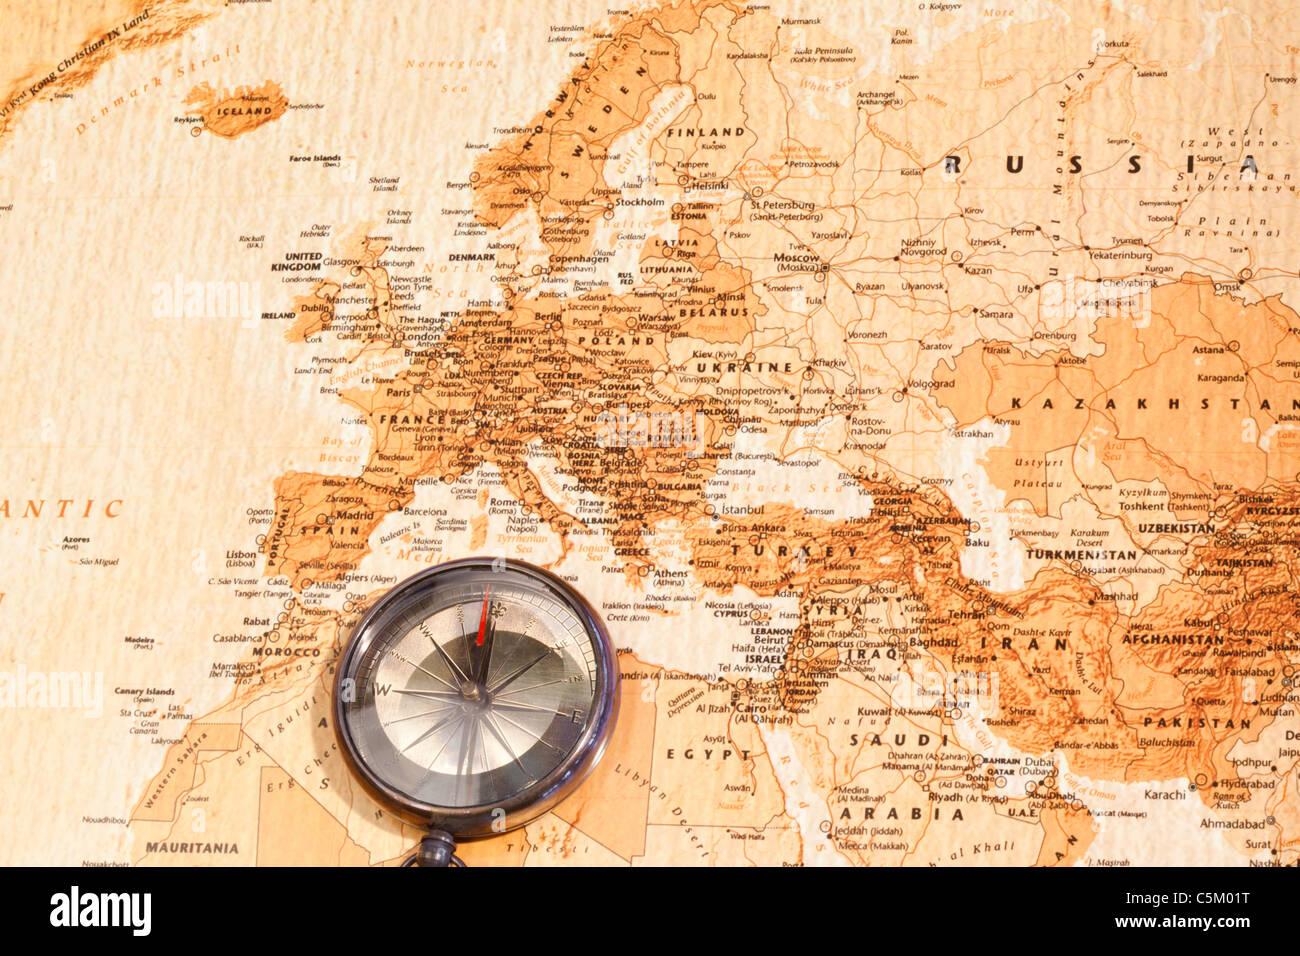 Weltkarte mit Kompass zeigt Europa und dem Nahen Osten Stockfotografie -  Alamy